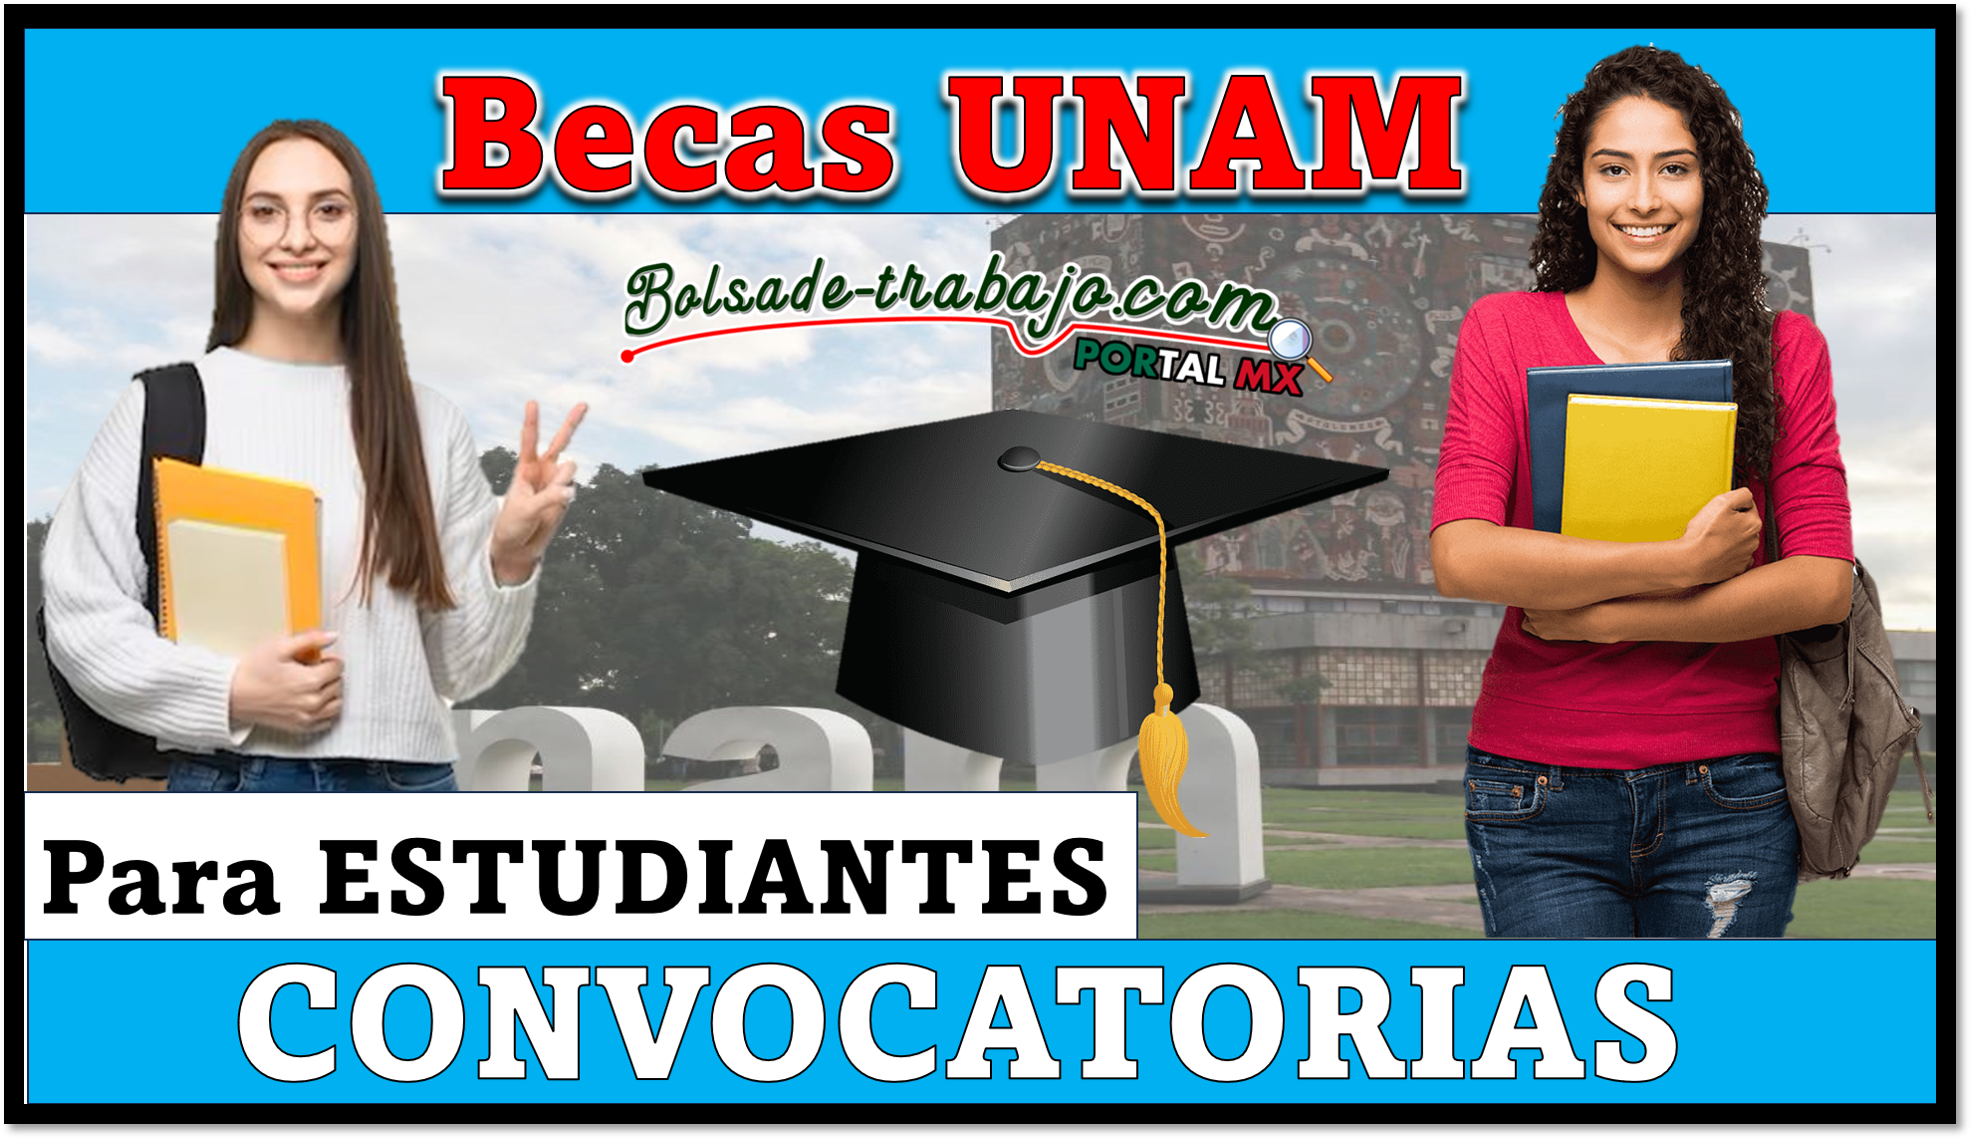 Becas de la UNAM para los estudiantes, estas ya estan activas